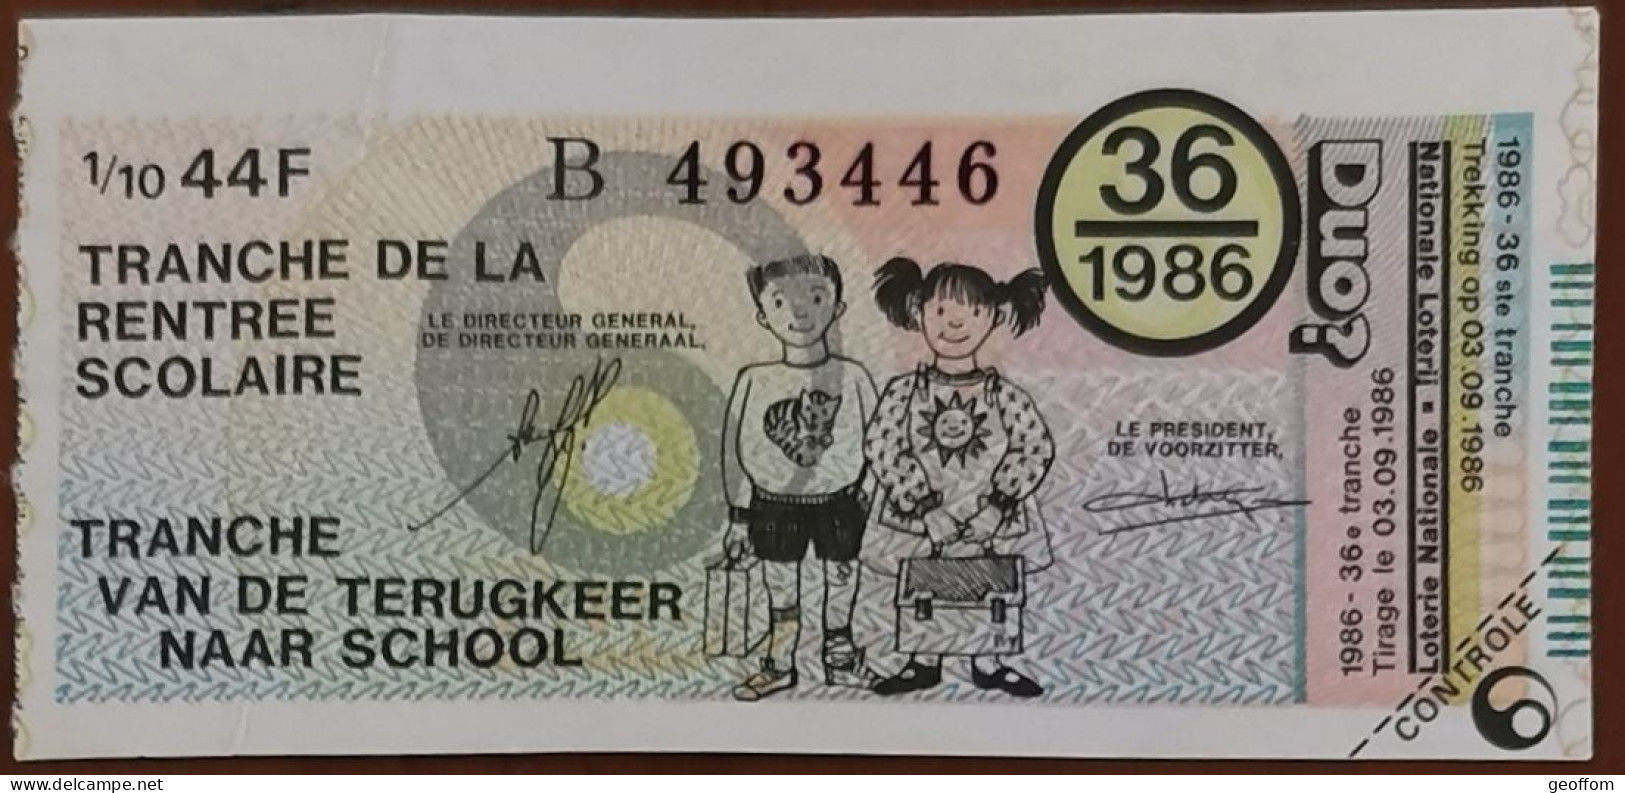 Billet De Loterie Nationale Belgique 1986 36e Tranche De La Rentrée Scolaire - 3-9-1986 - Billetes De Lotería